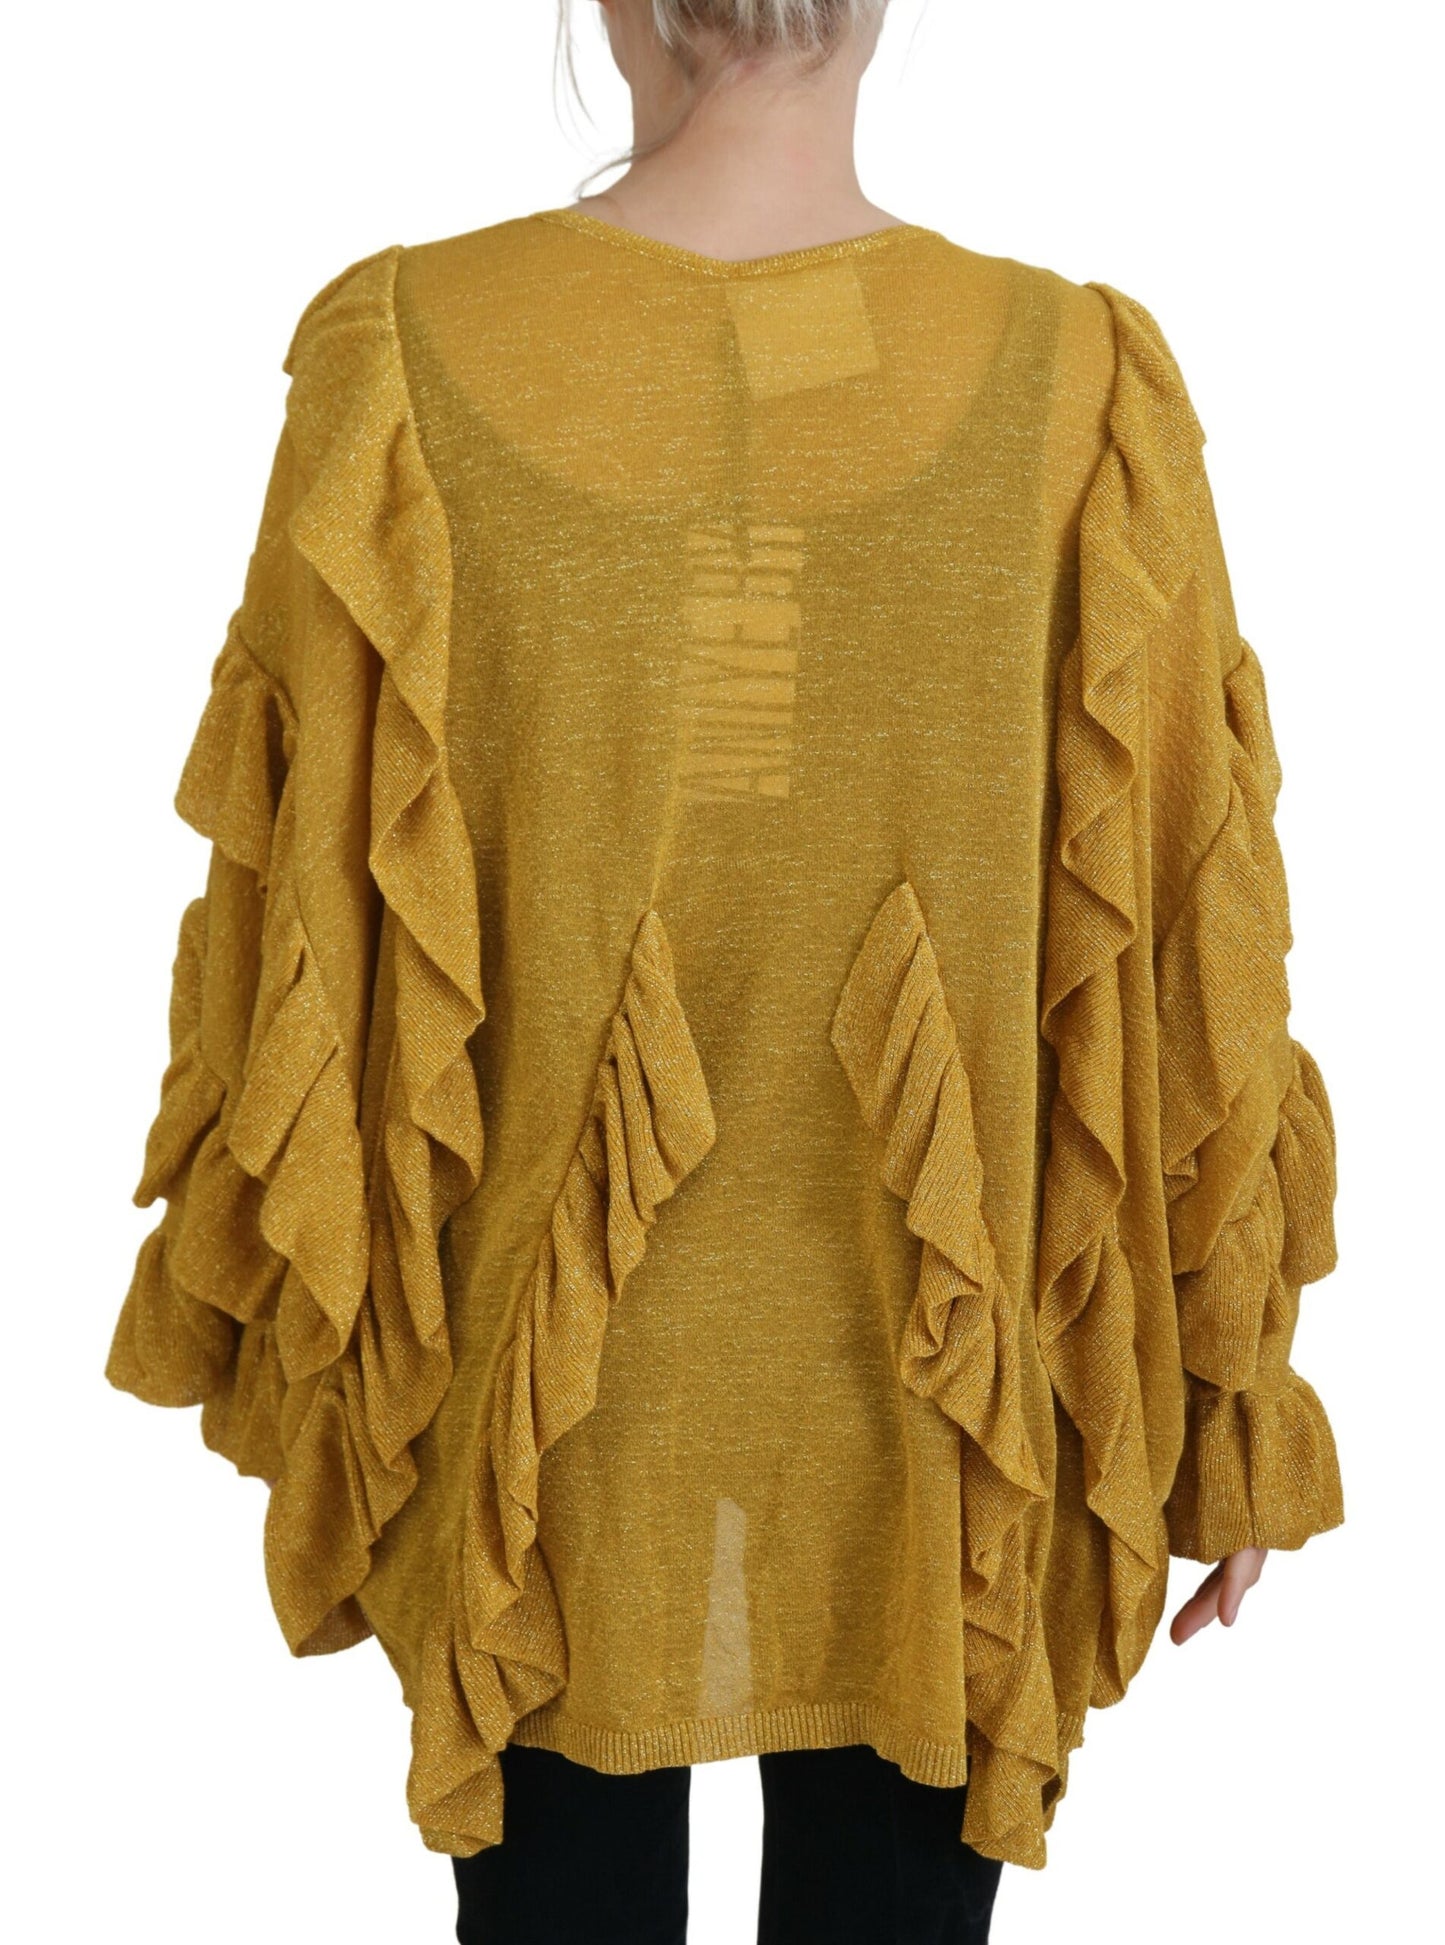 Aniye von goldenen langen Ärmeln gekräuselte Frauen Strickjacke Pullover